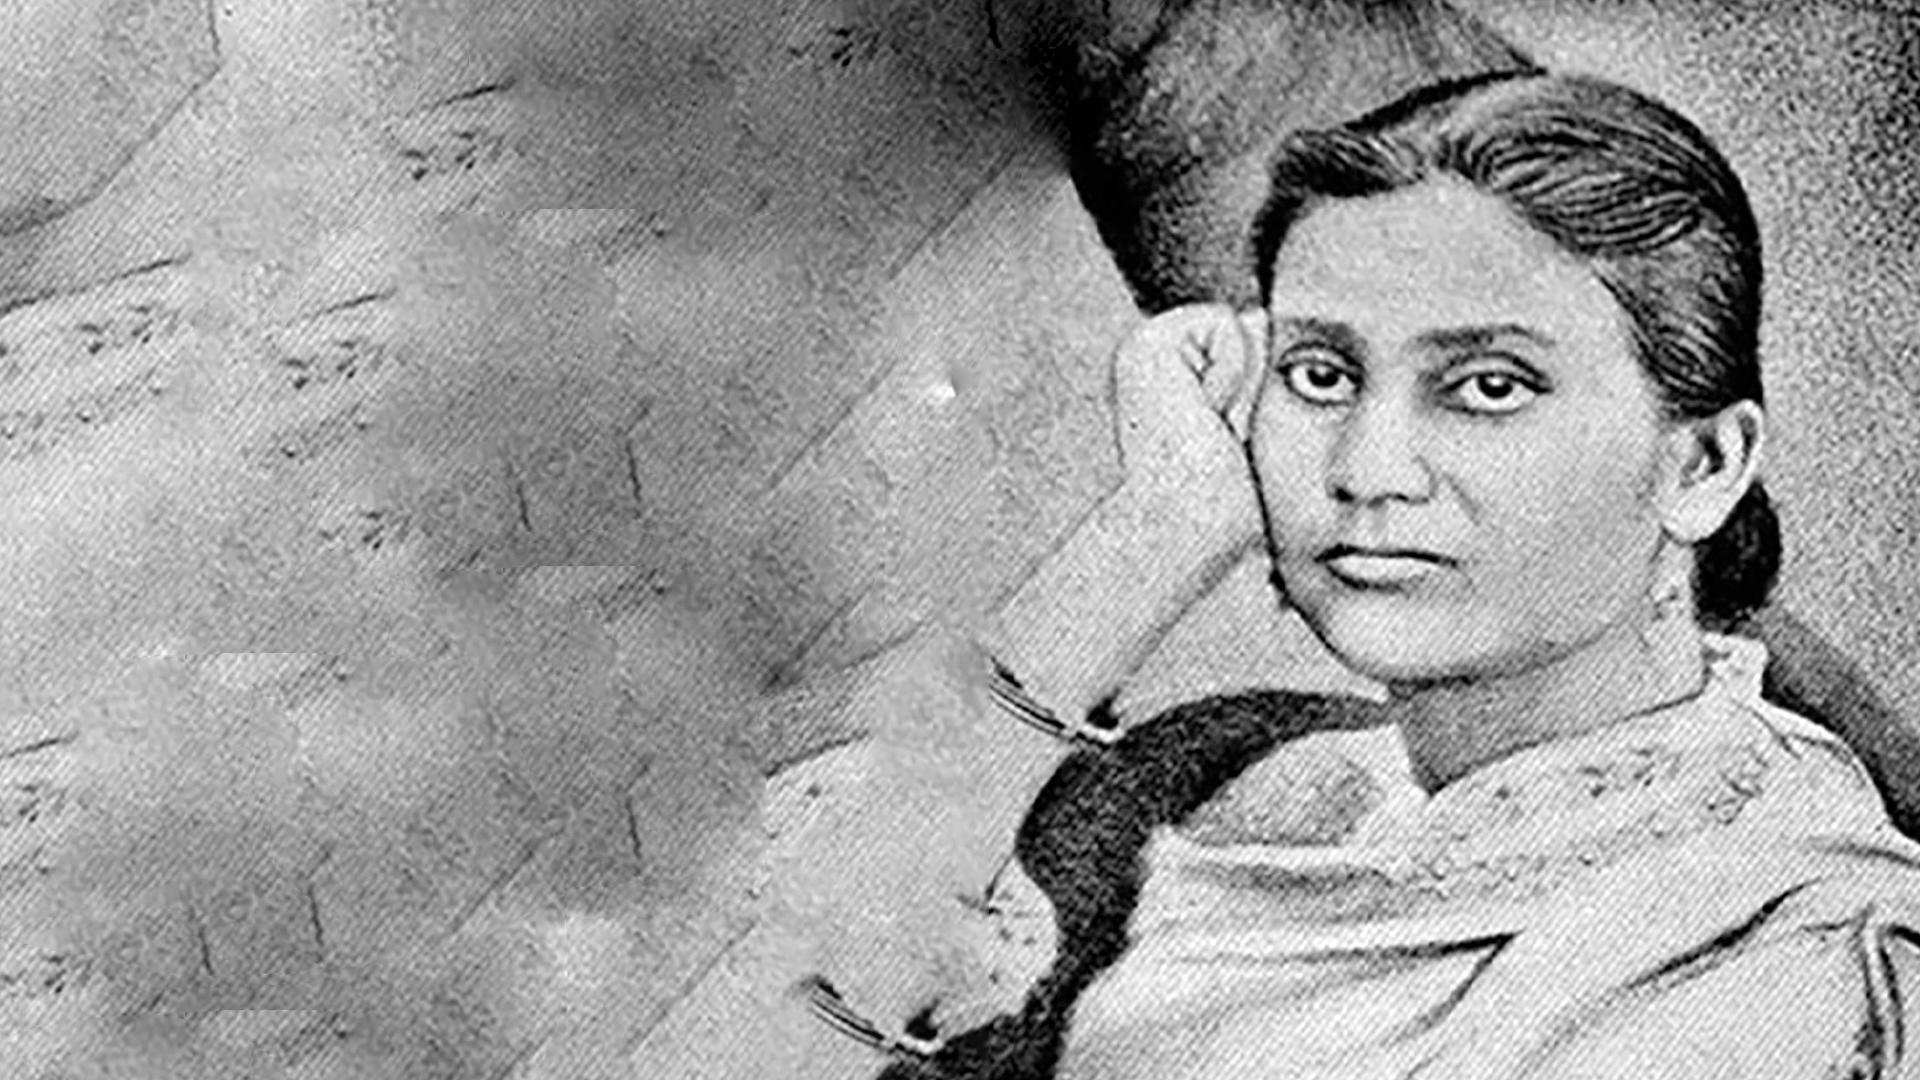 প্রথম বাঙালি নারী-চিকিৎসক কাদম্বিনী গাঙ্গুলী